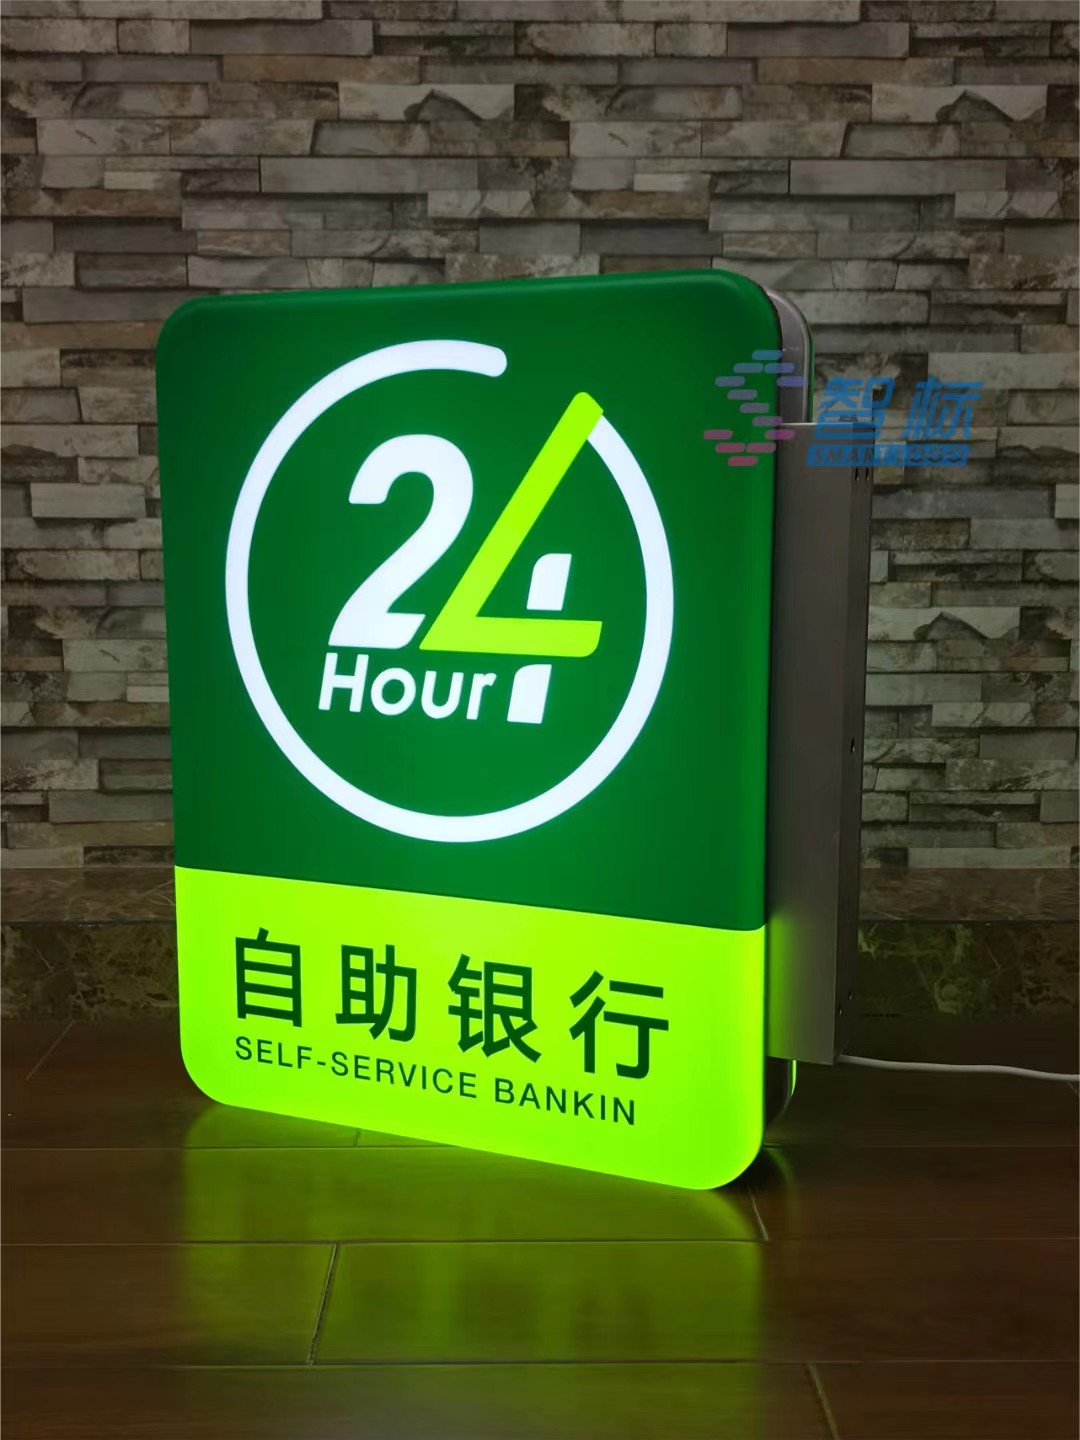 中国邮政储蓄银行24小时侧挂灯箱